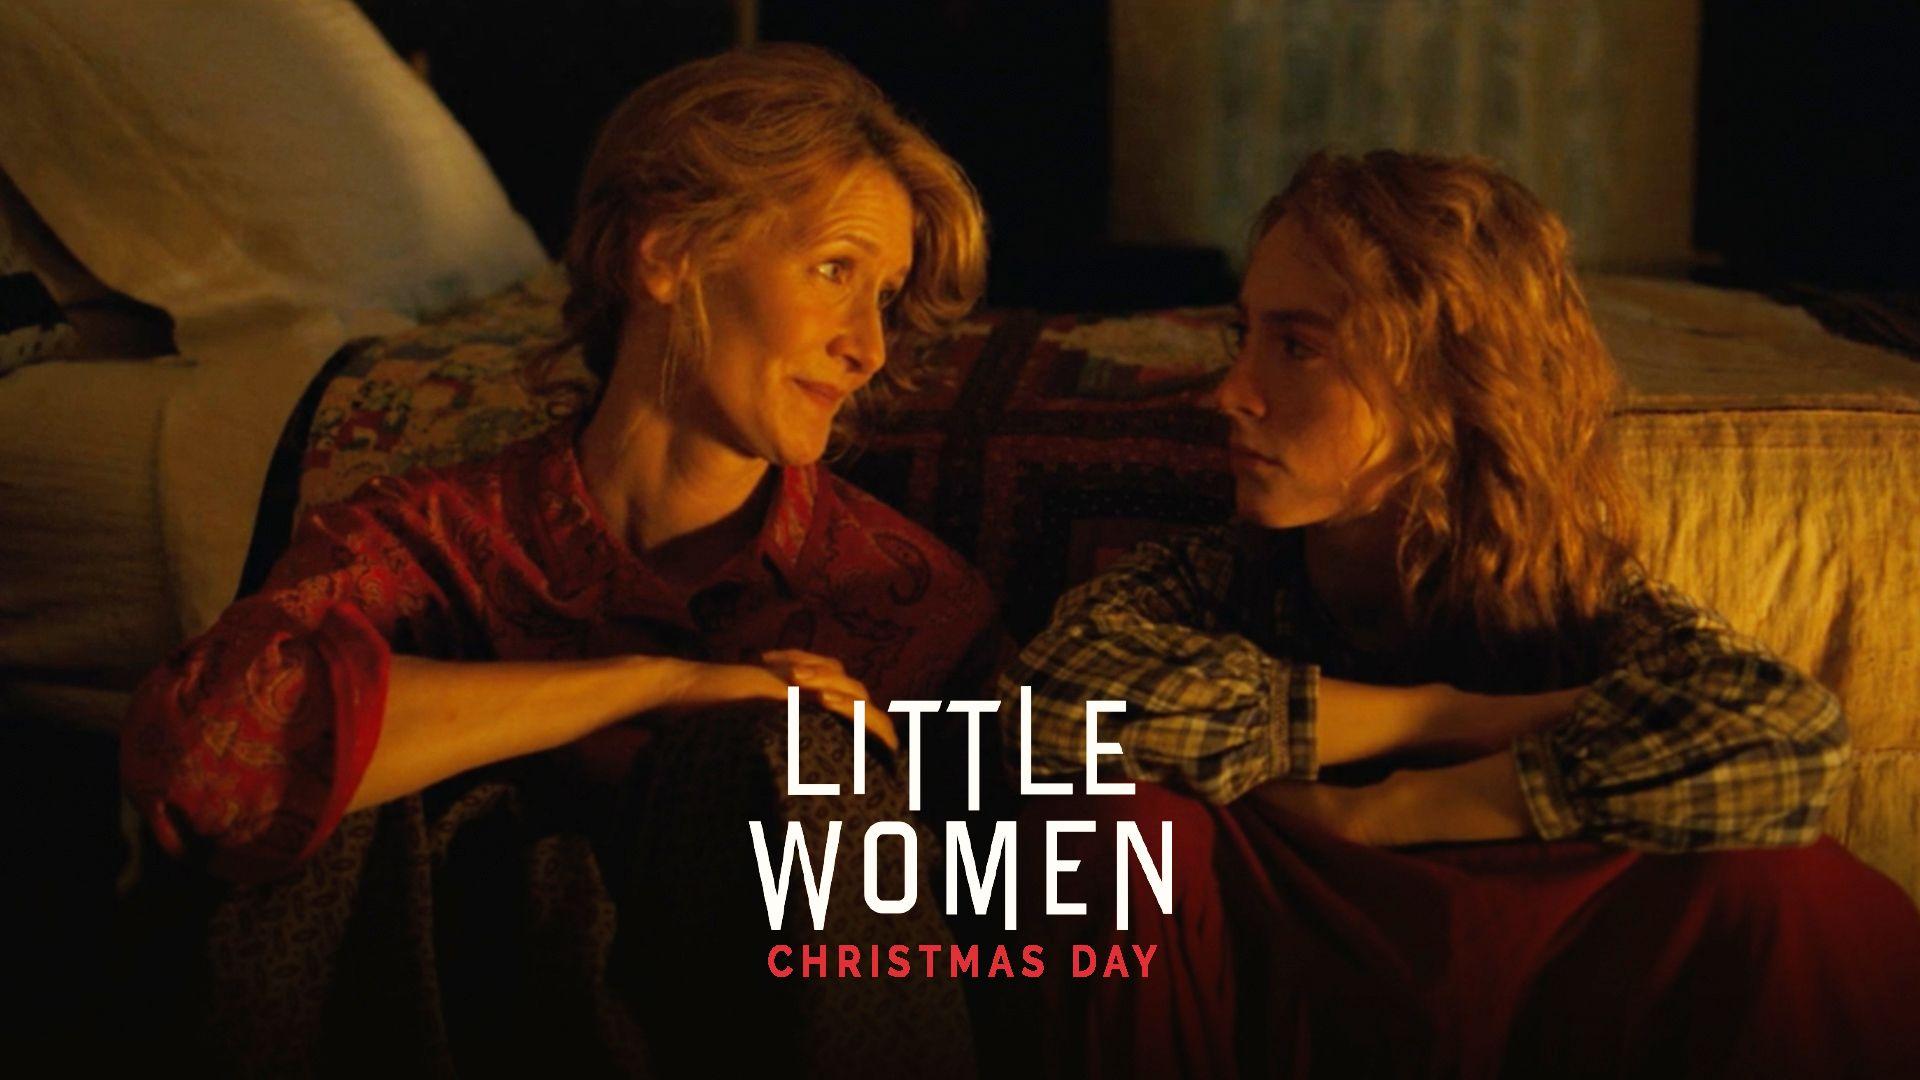 Watch Laura Dern & Saoirse Ronan in a Sweet 'Little Women' Scene